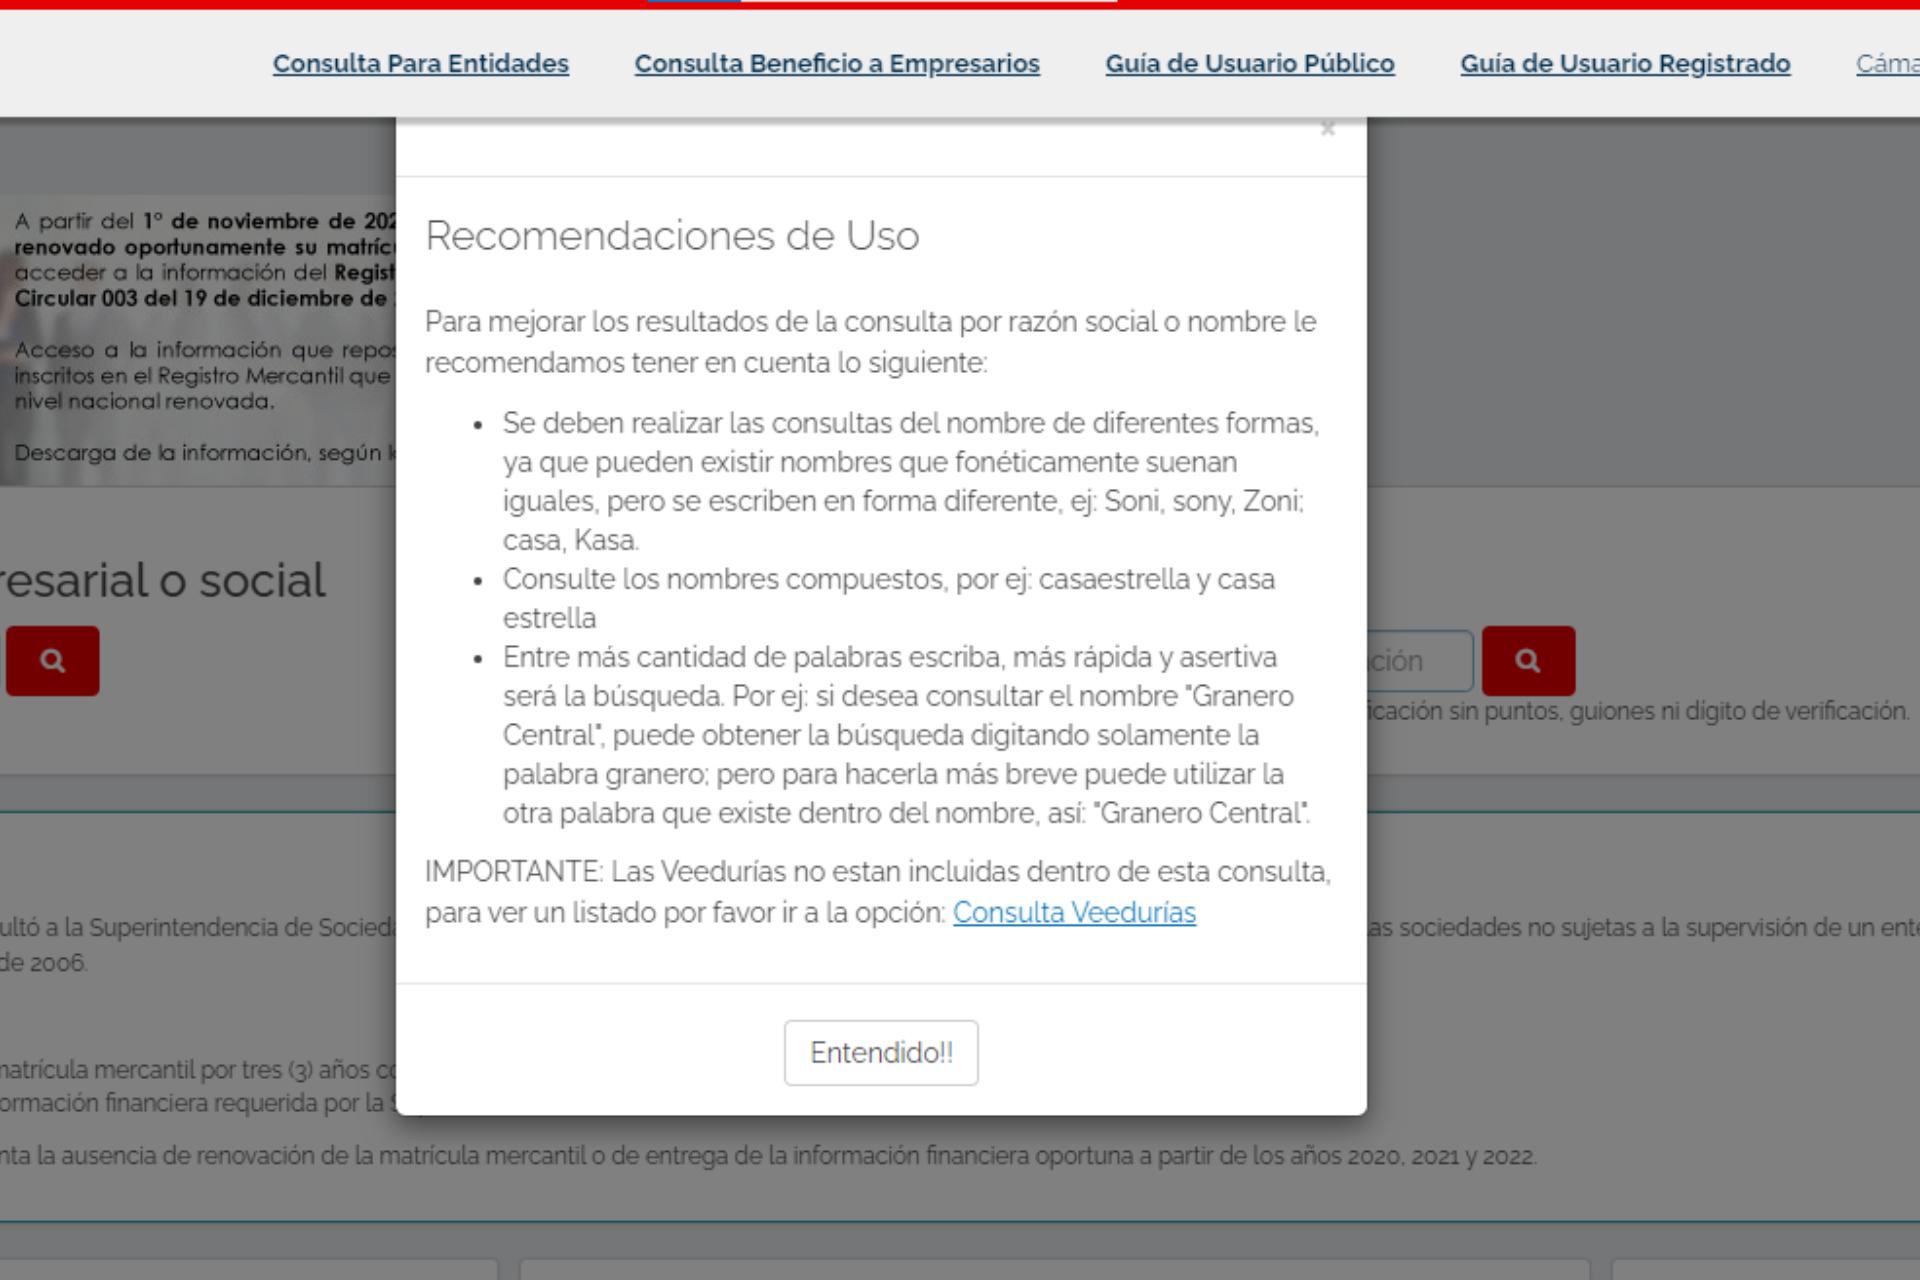 Portal RUES sitio del gobierno colombiano